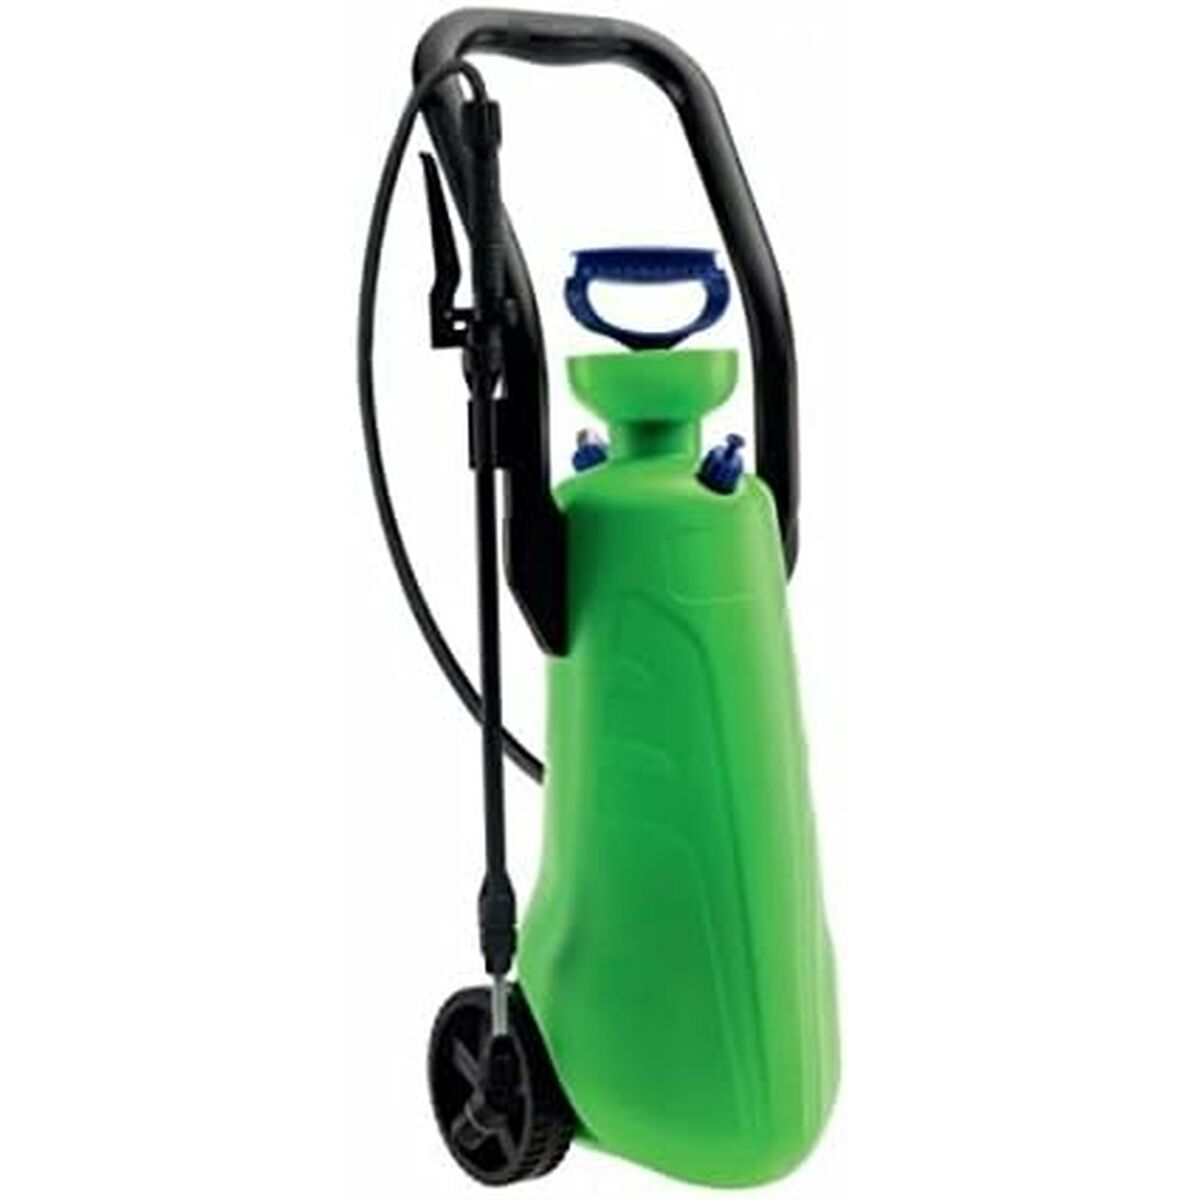 Garden Pressure Sprayer Di Martino 7200 15 L